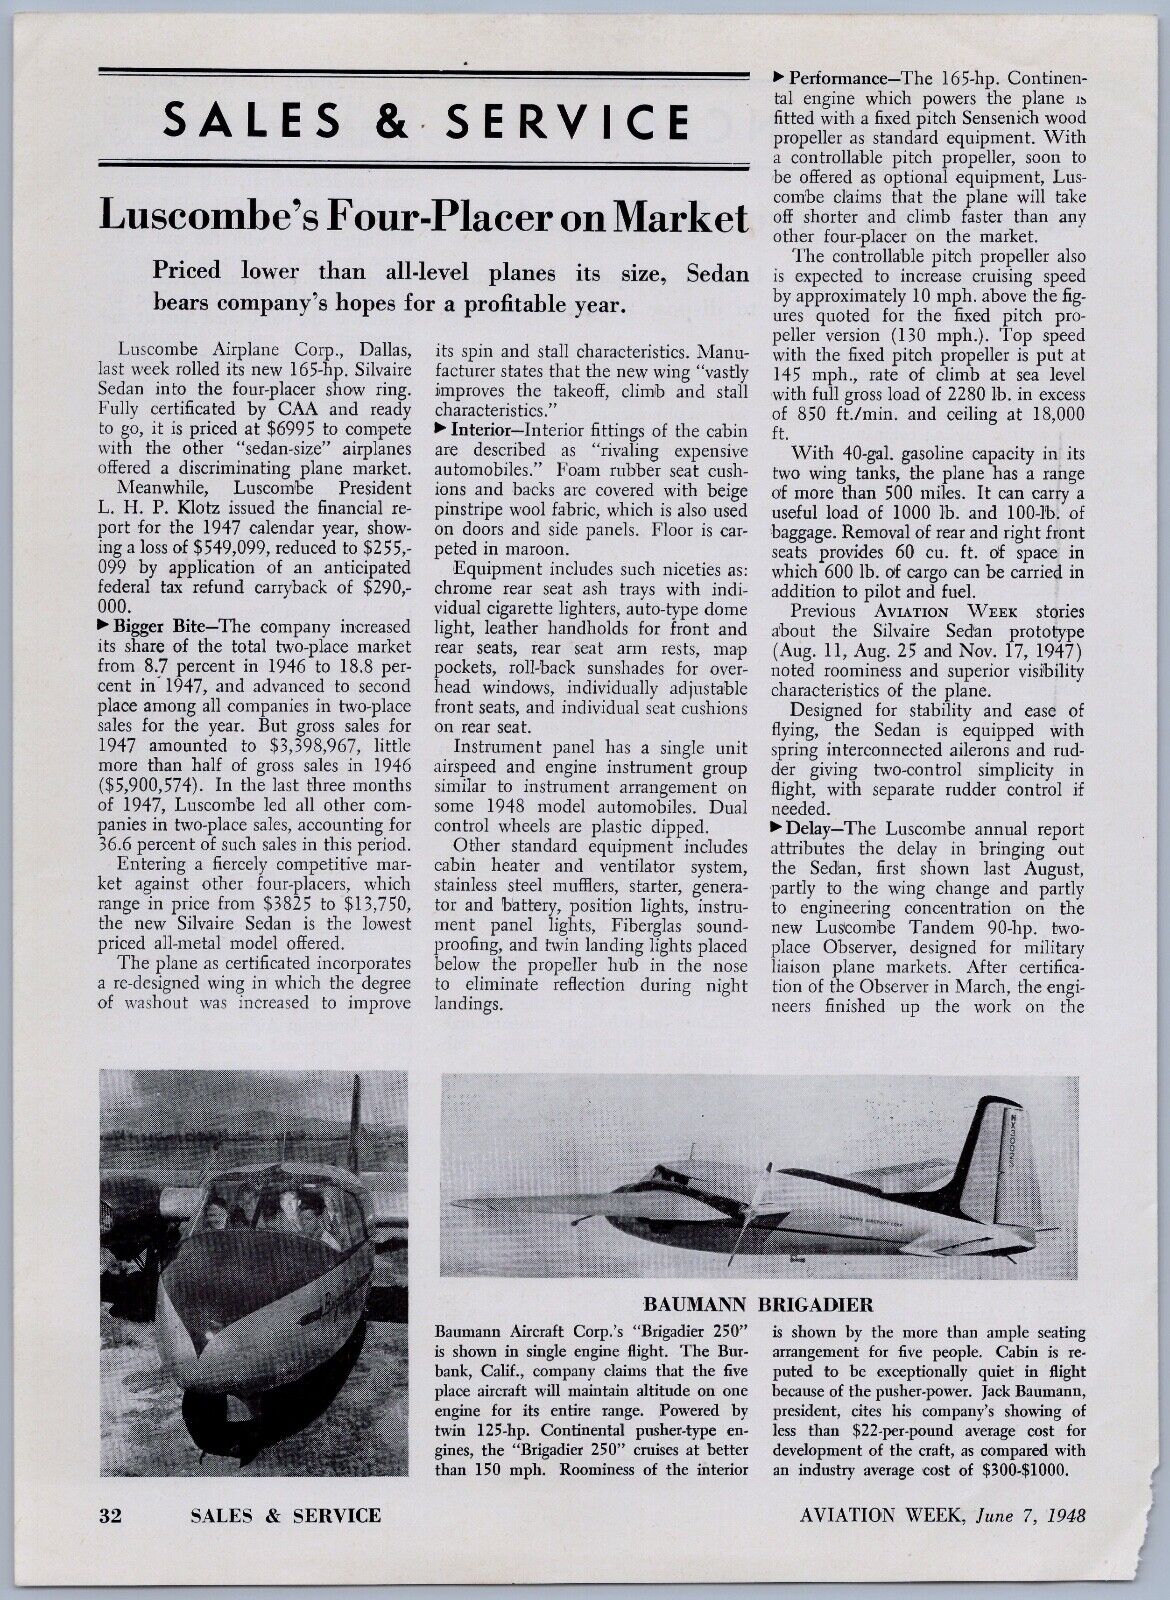 1948 Aviation Article - Baumann Aircraft Brigadier 250 Personal Airplane Burbank